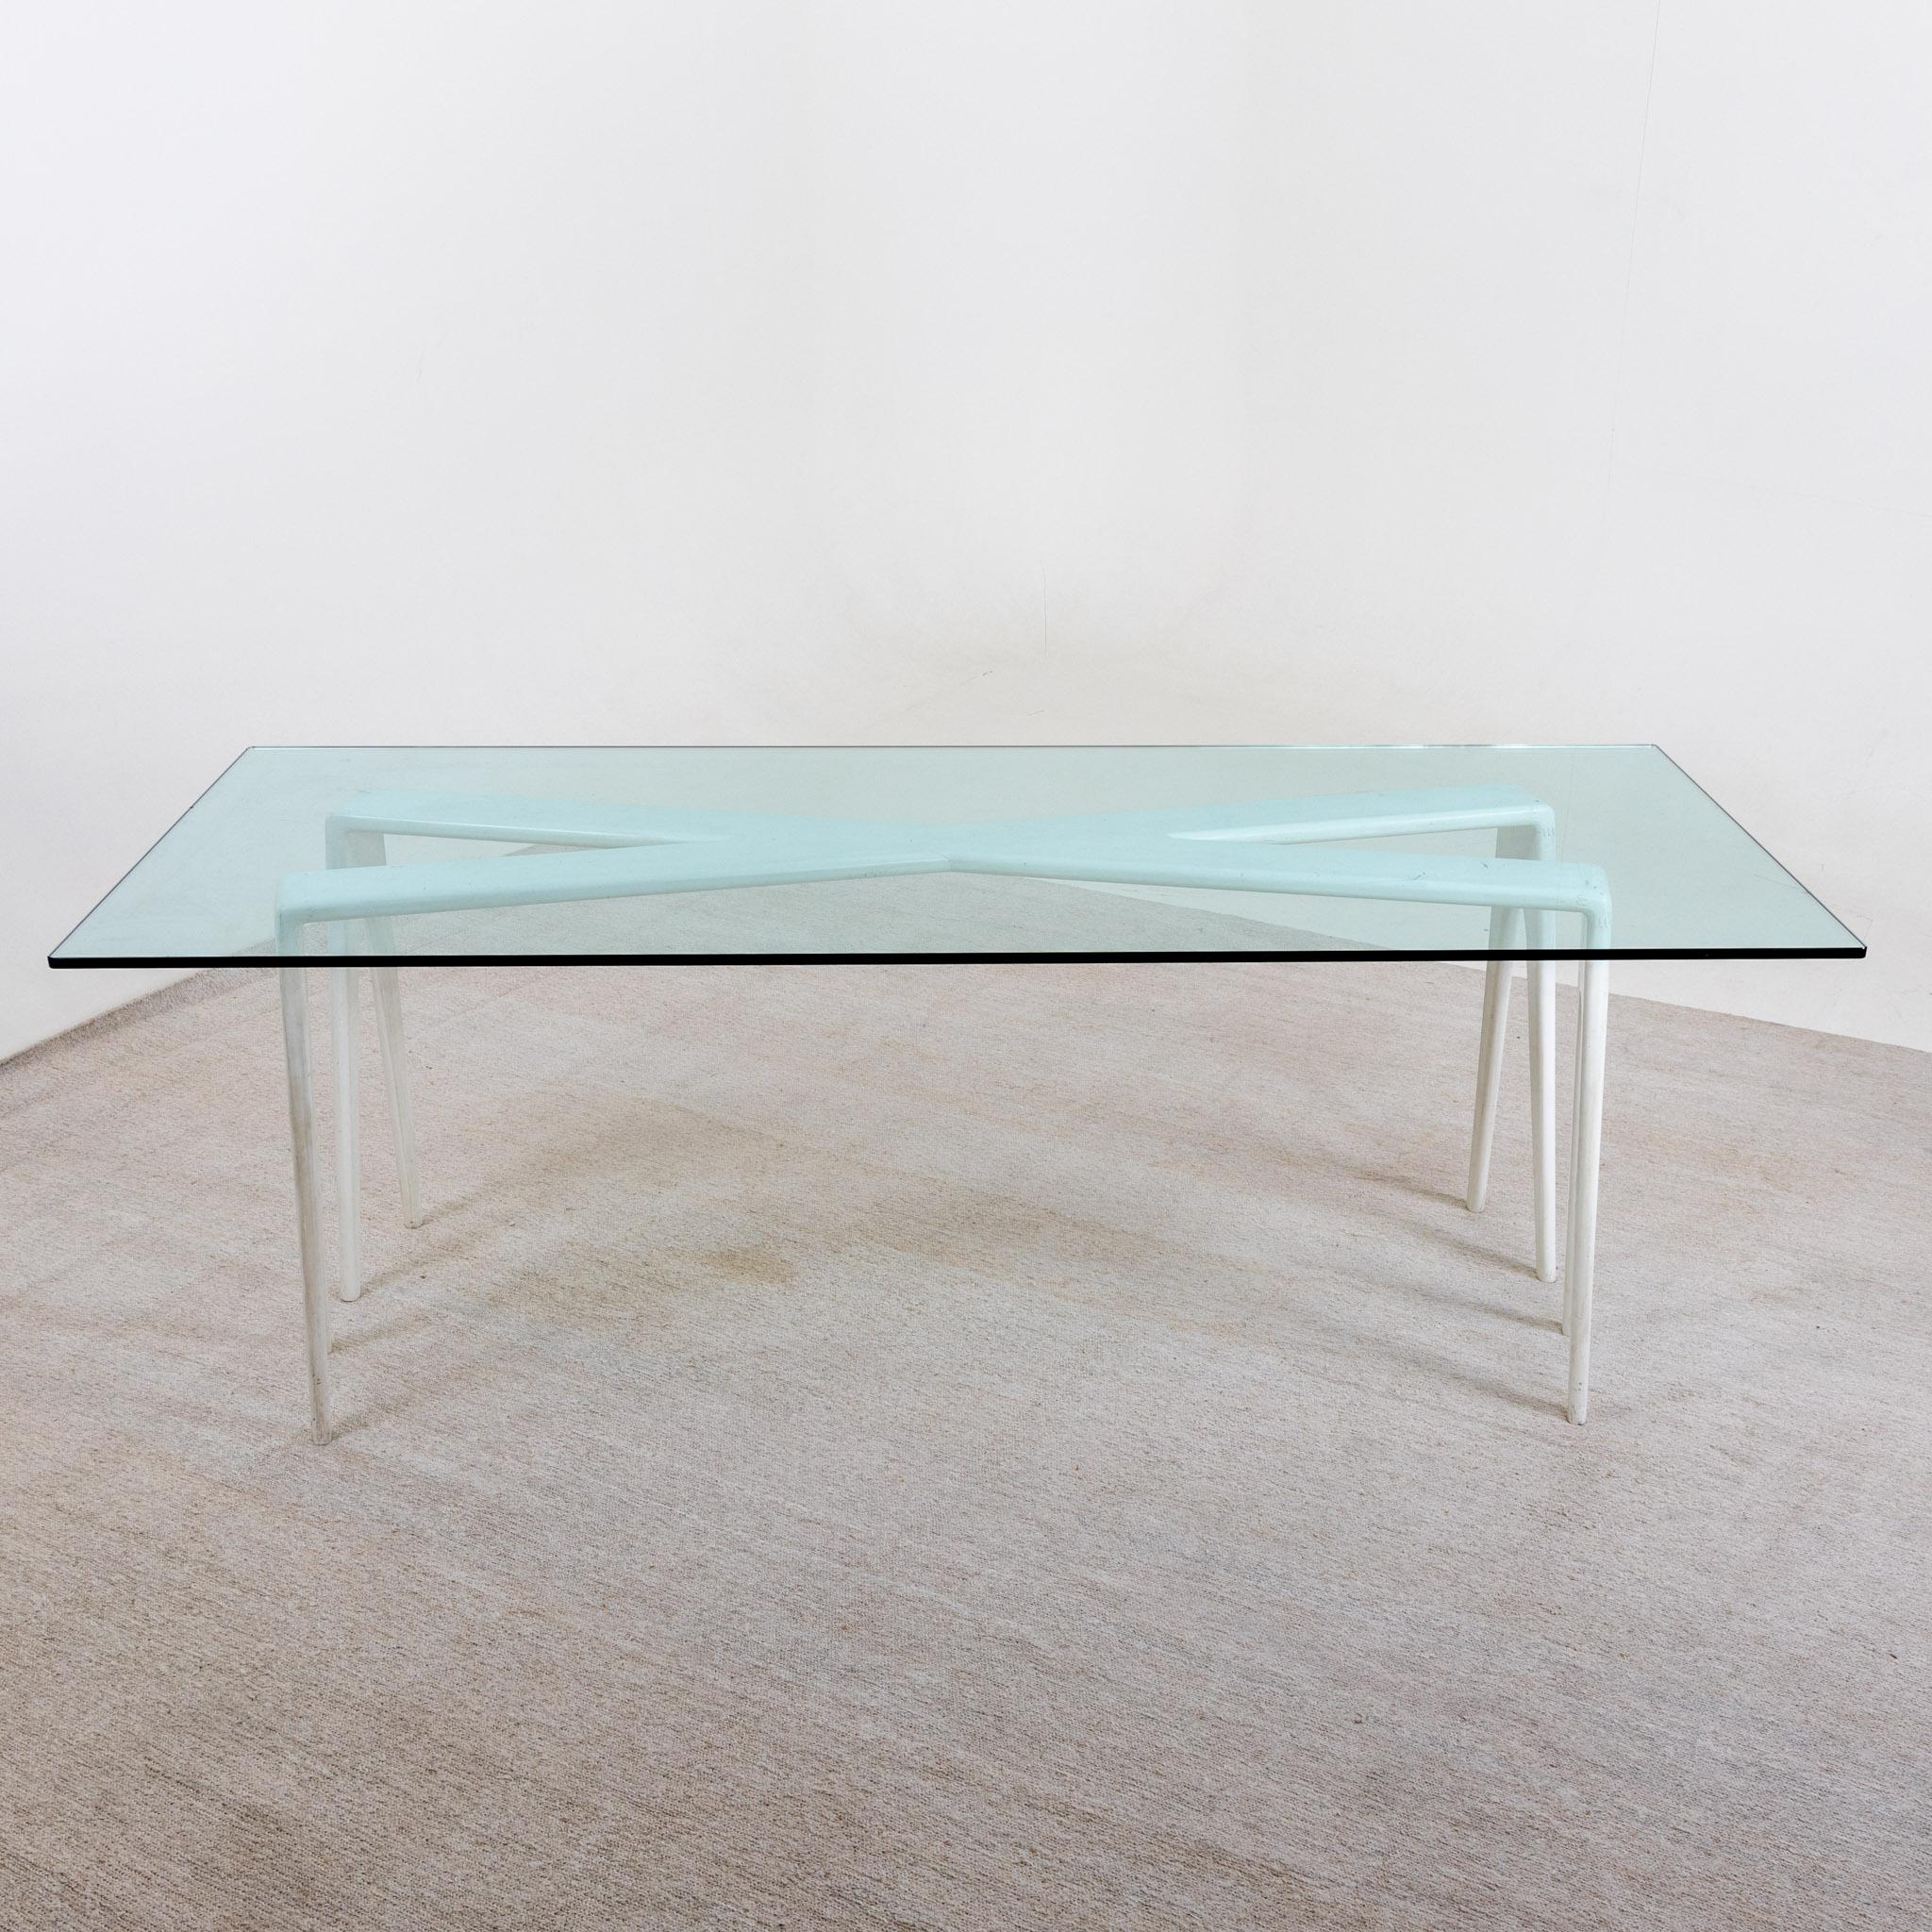 Großer Esstisch mit rechteckiger Glasplatte auf x-förmigem, weiß lackiertem Holzgestell. Leichte Alters- und Gebrauchsspuren.